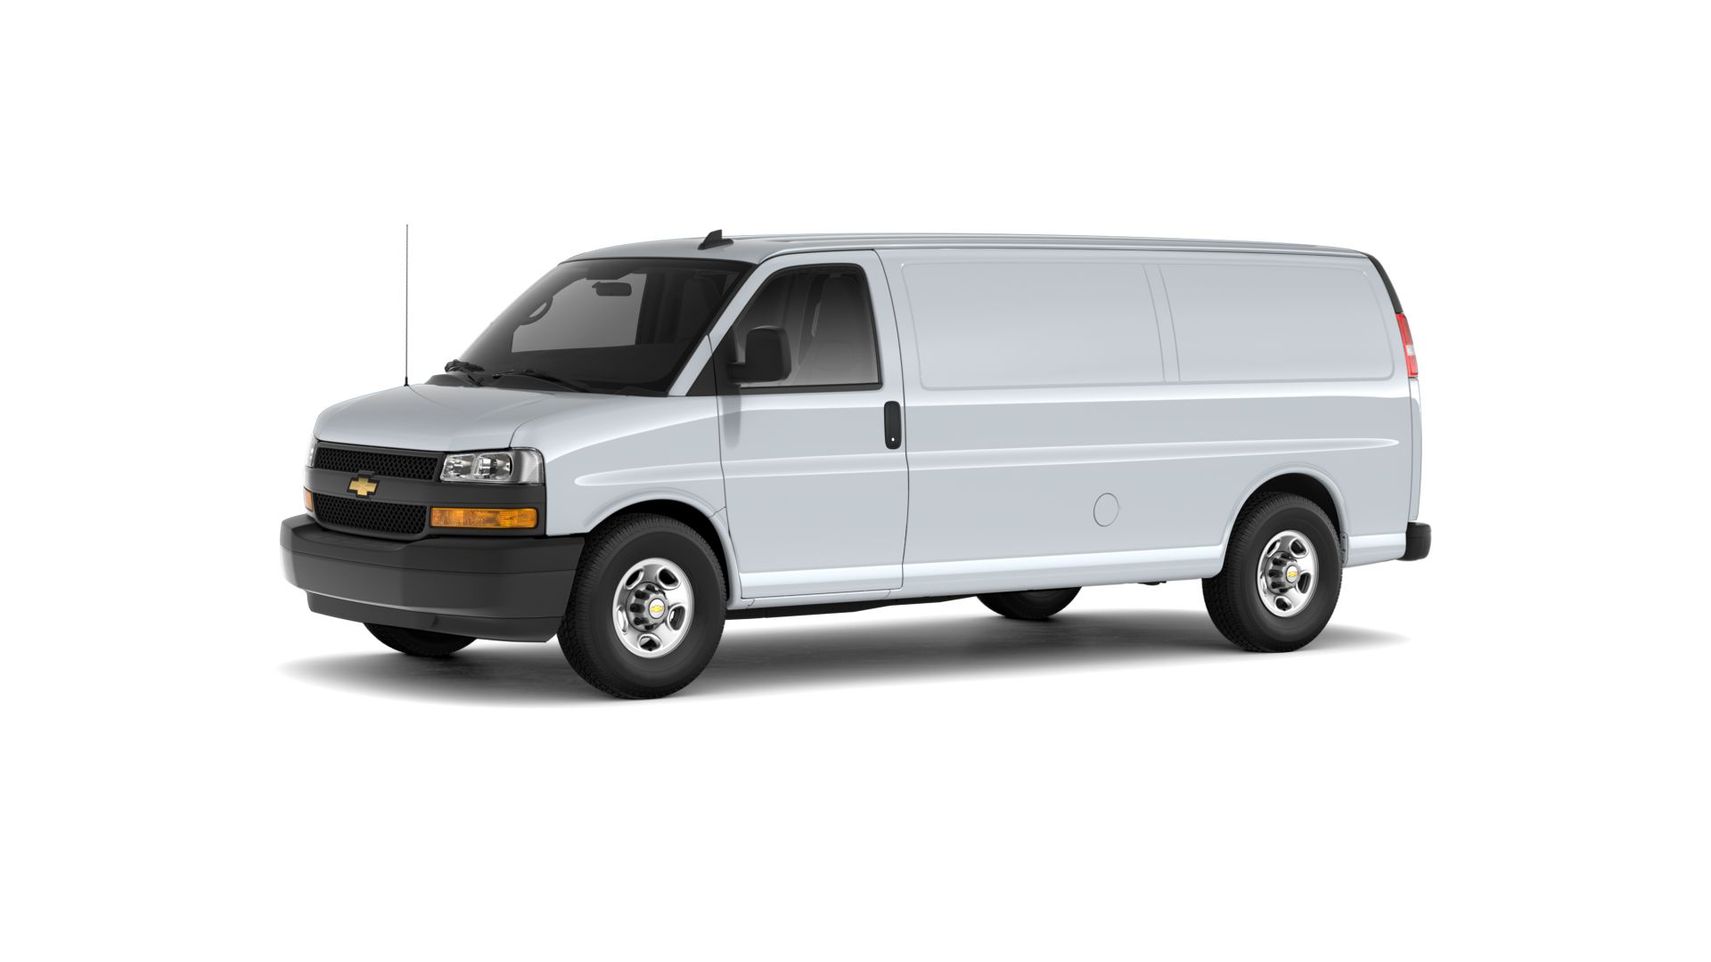 Chevrolet Express Cargo 2500 Extended Wheelbase 2021